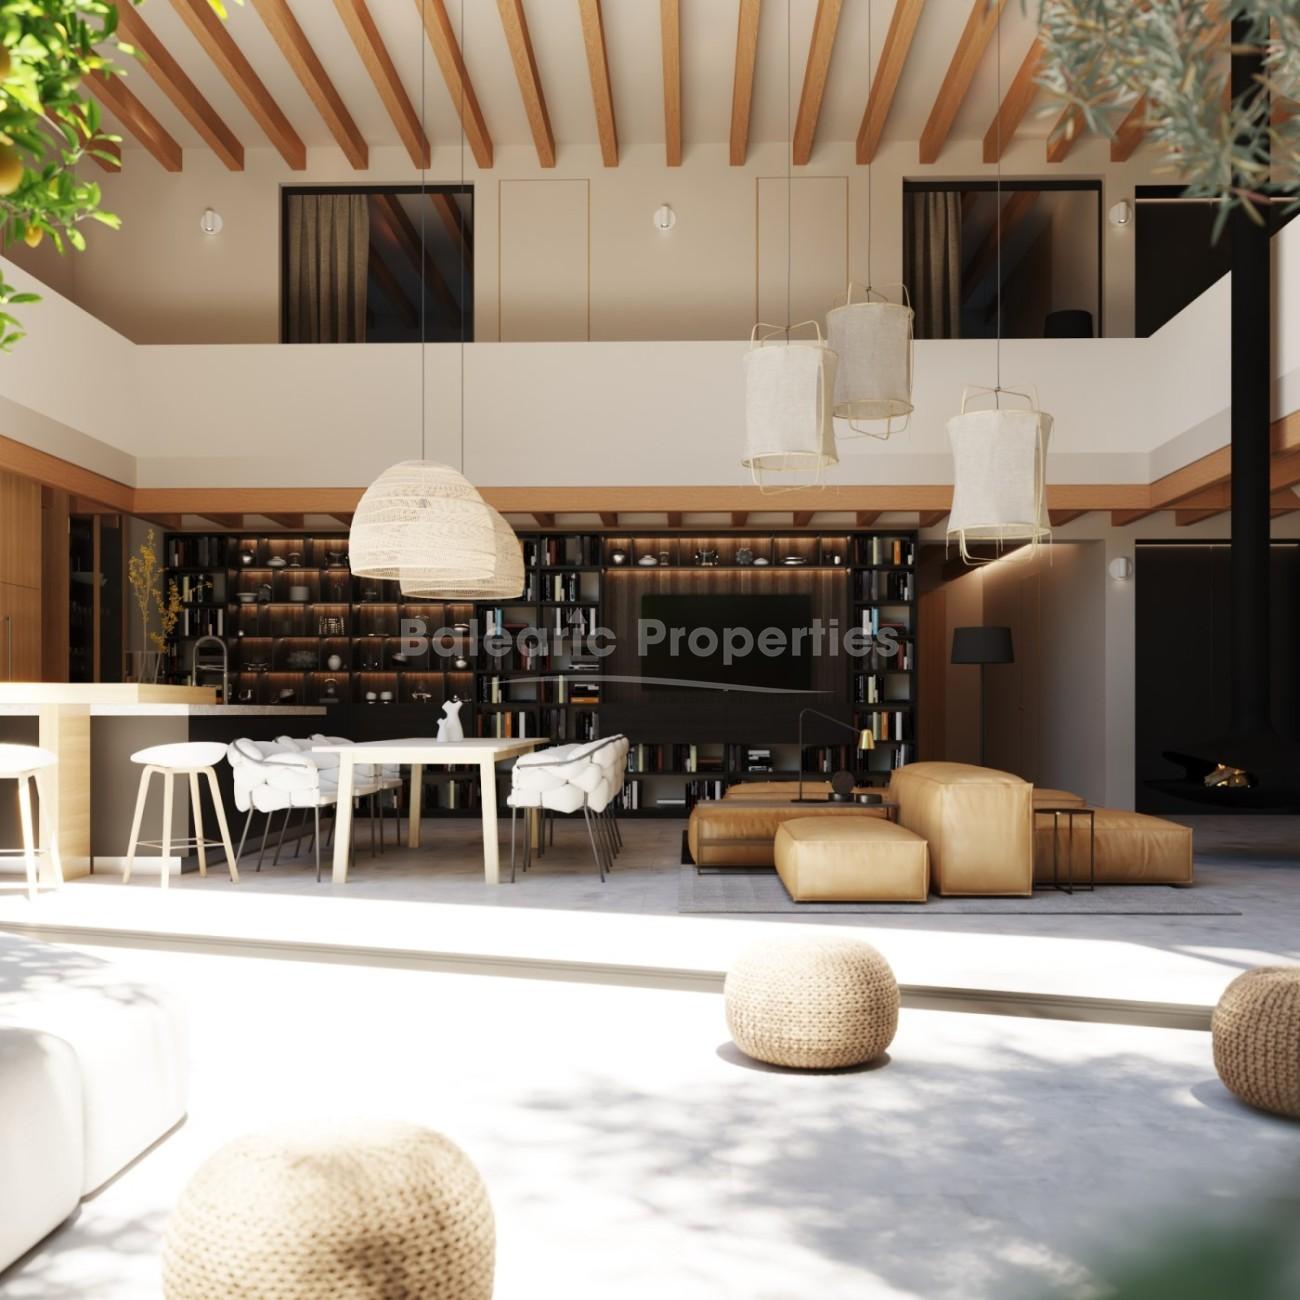 Excepcional proyecto de casa de pueblo en venta en Santa Maria, Mallorca